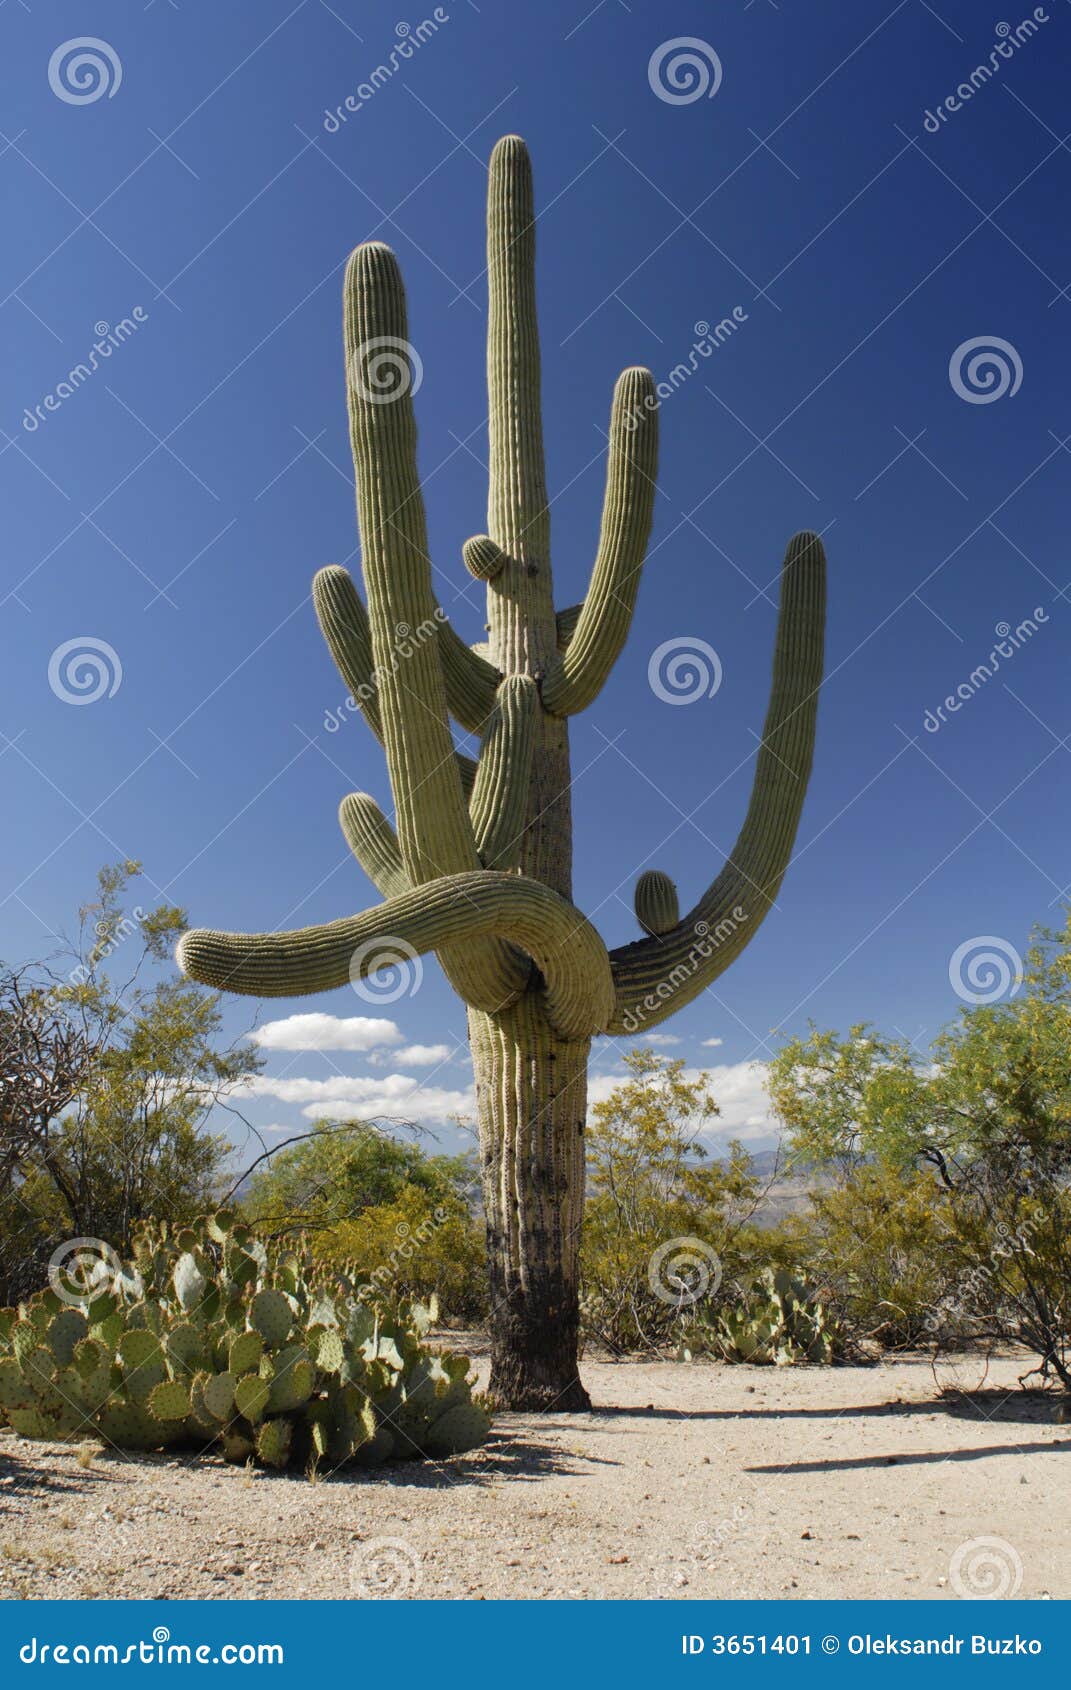 giant saguaro cactus in sonoran desert